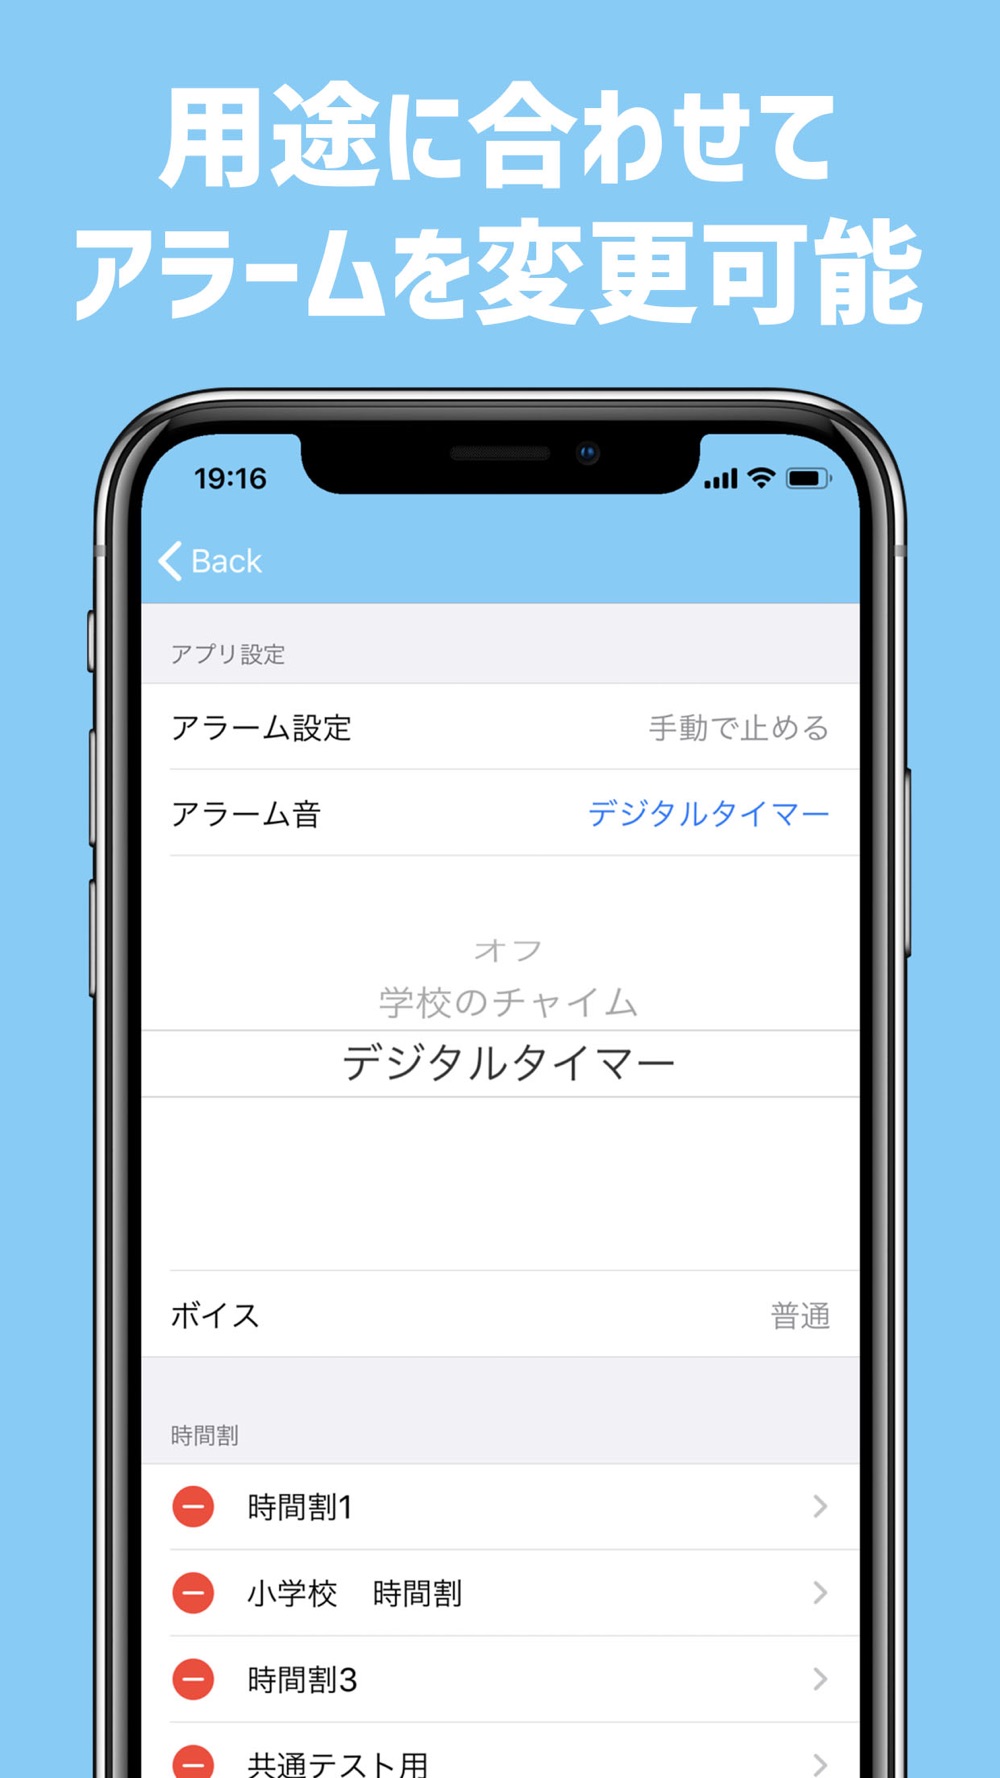 スクールタイマー テストや時間割りの管理に使えるタイマー Free Download App For Iphone Steprimo Com